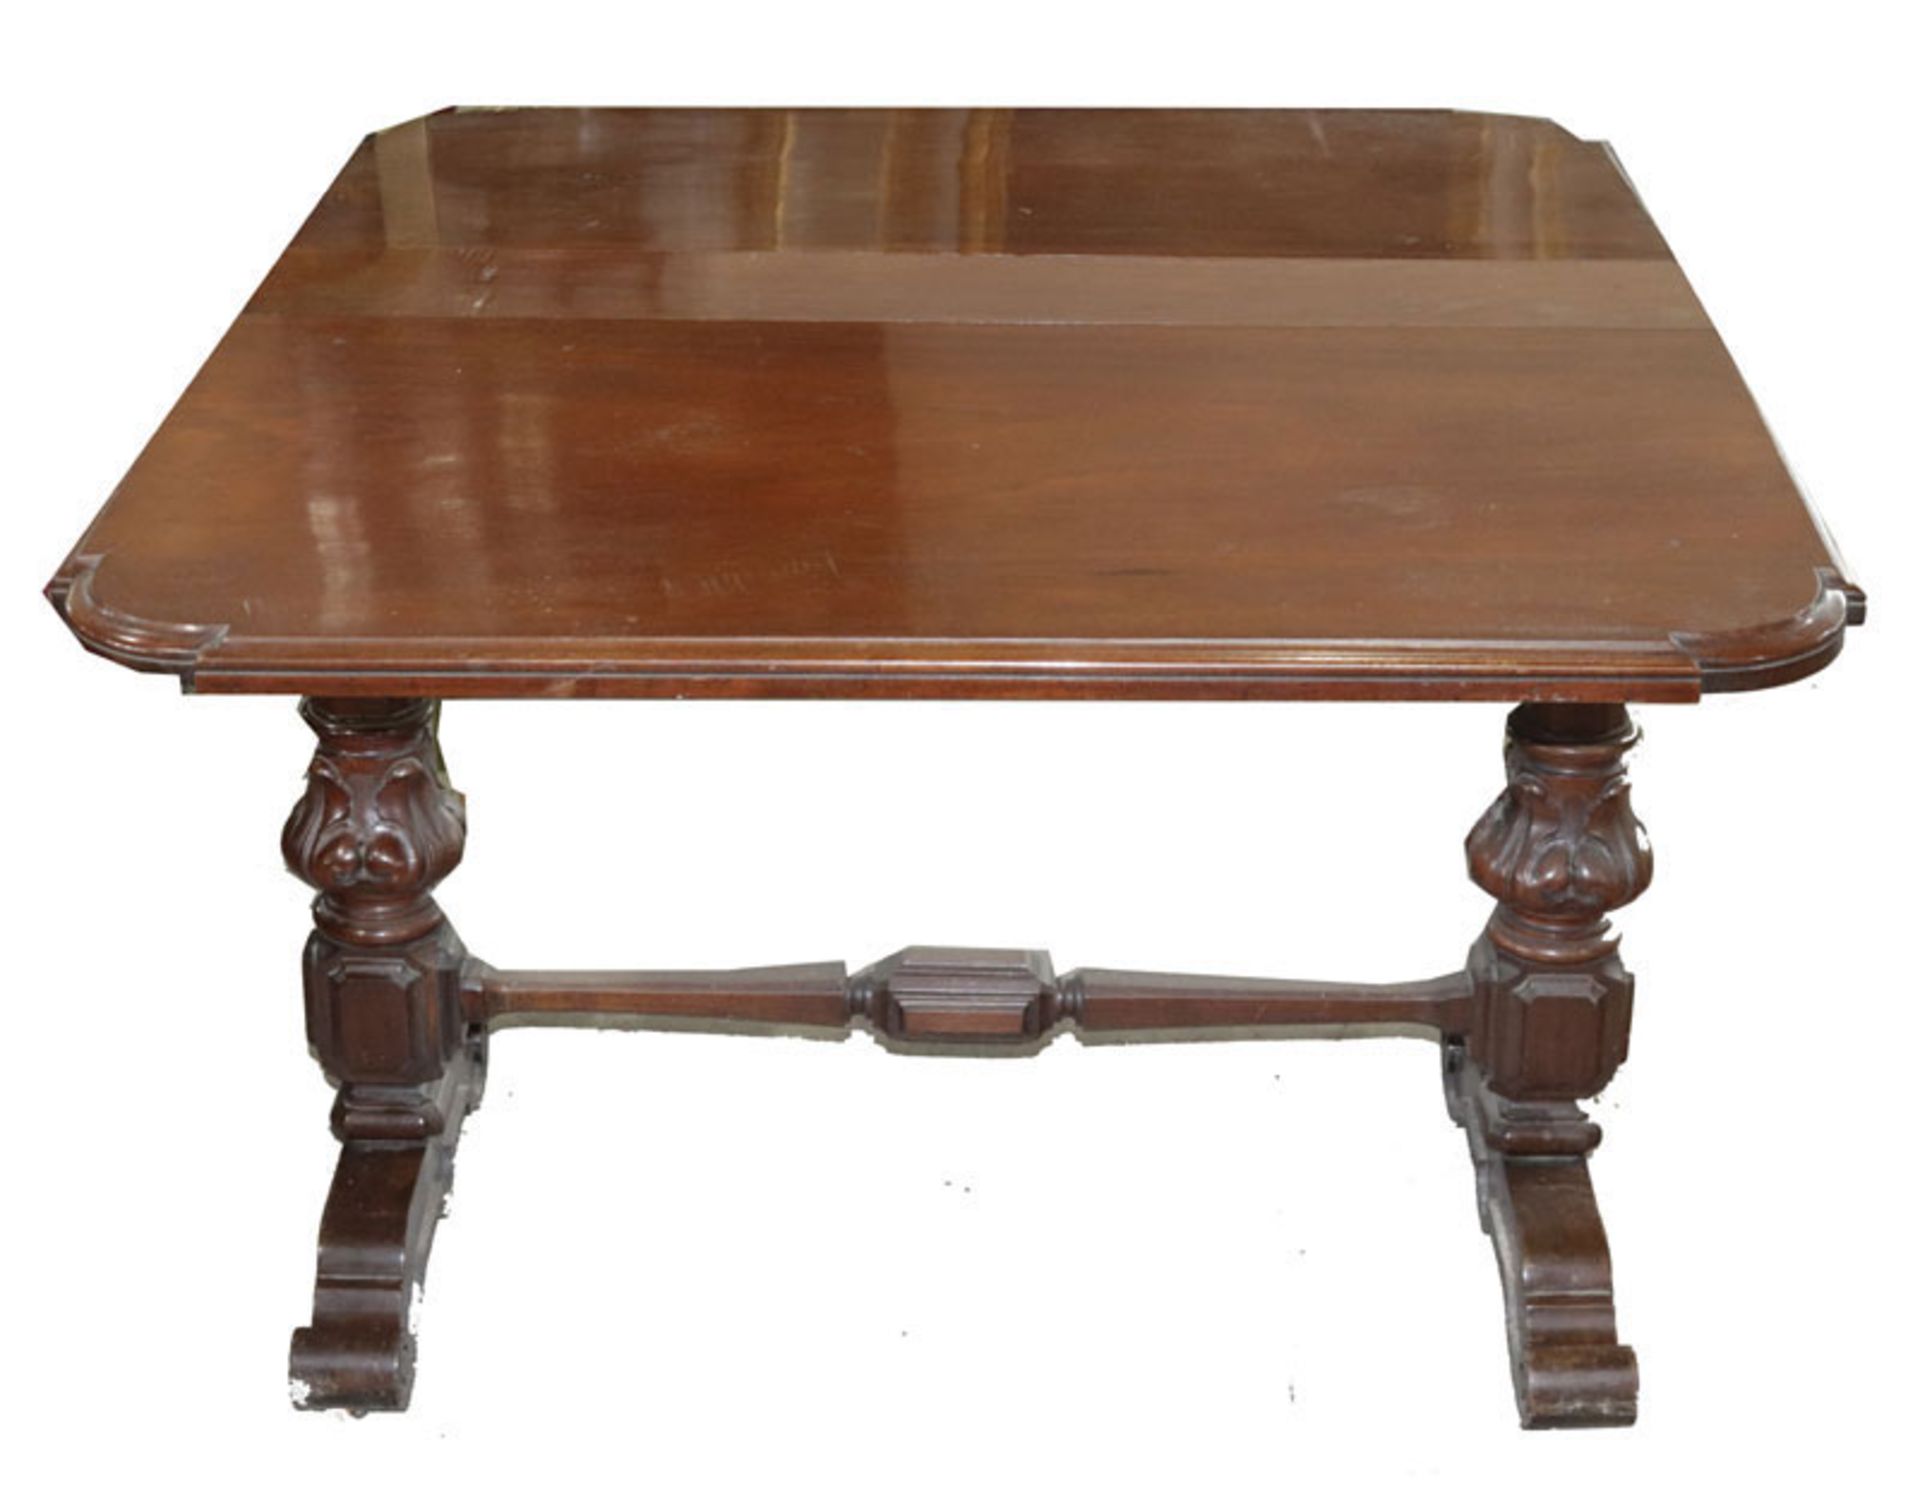 Englischer Tisch auf gedrechselten Beinen, 19. Jahrhundert, beidseitig abklappbar, H 75 cm, B 15/